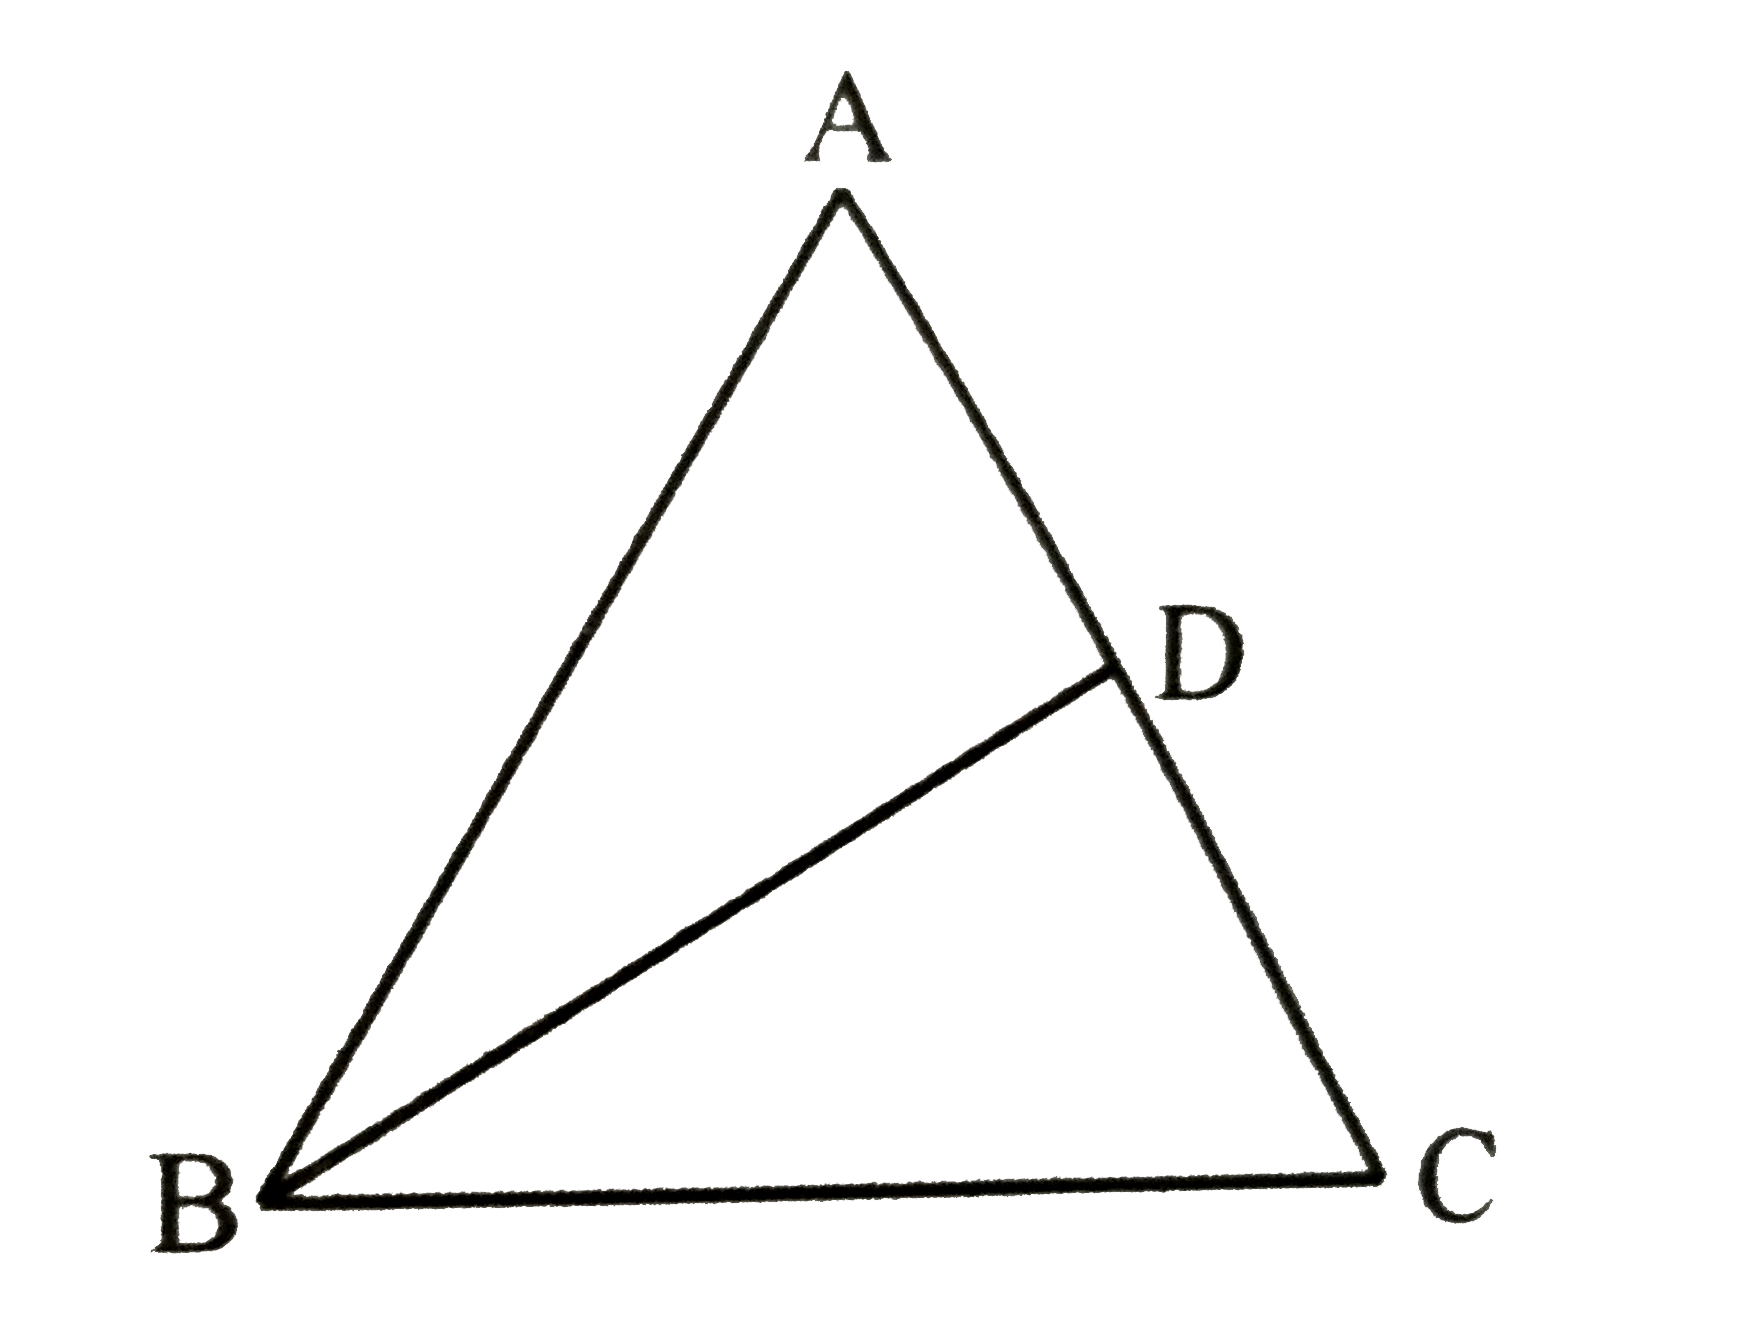 माना एक triangle ABC है जिसमे AB = AC तथा AC पर एक बिंदु D है और BC ^(2) = AC xx CD तो सिद्ध कीजिए कि BD = BC